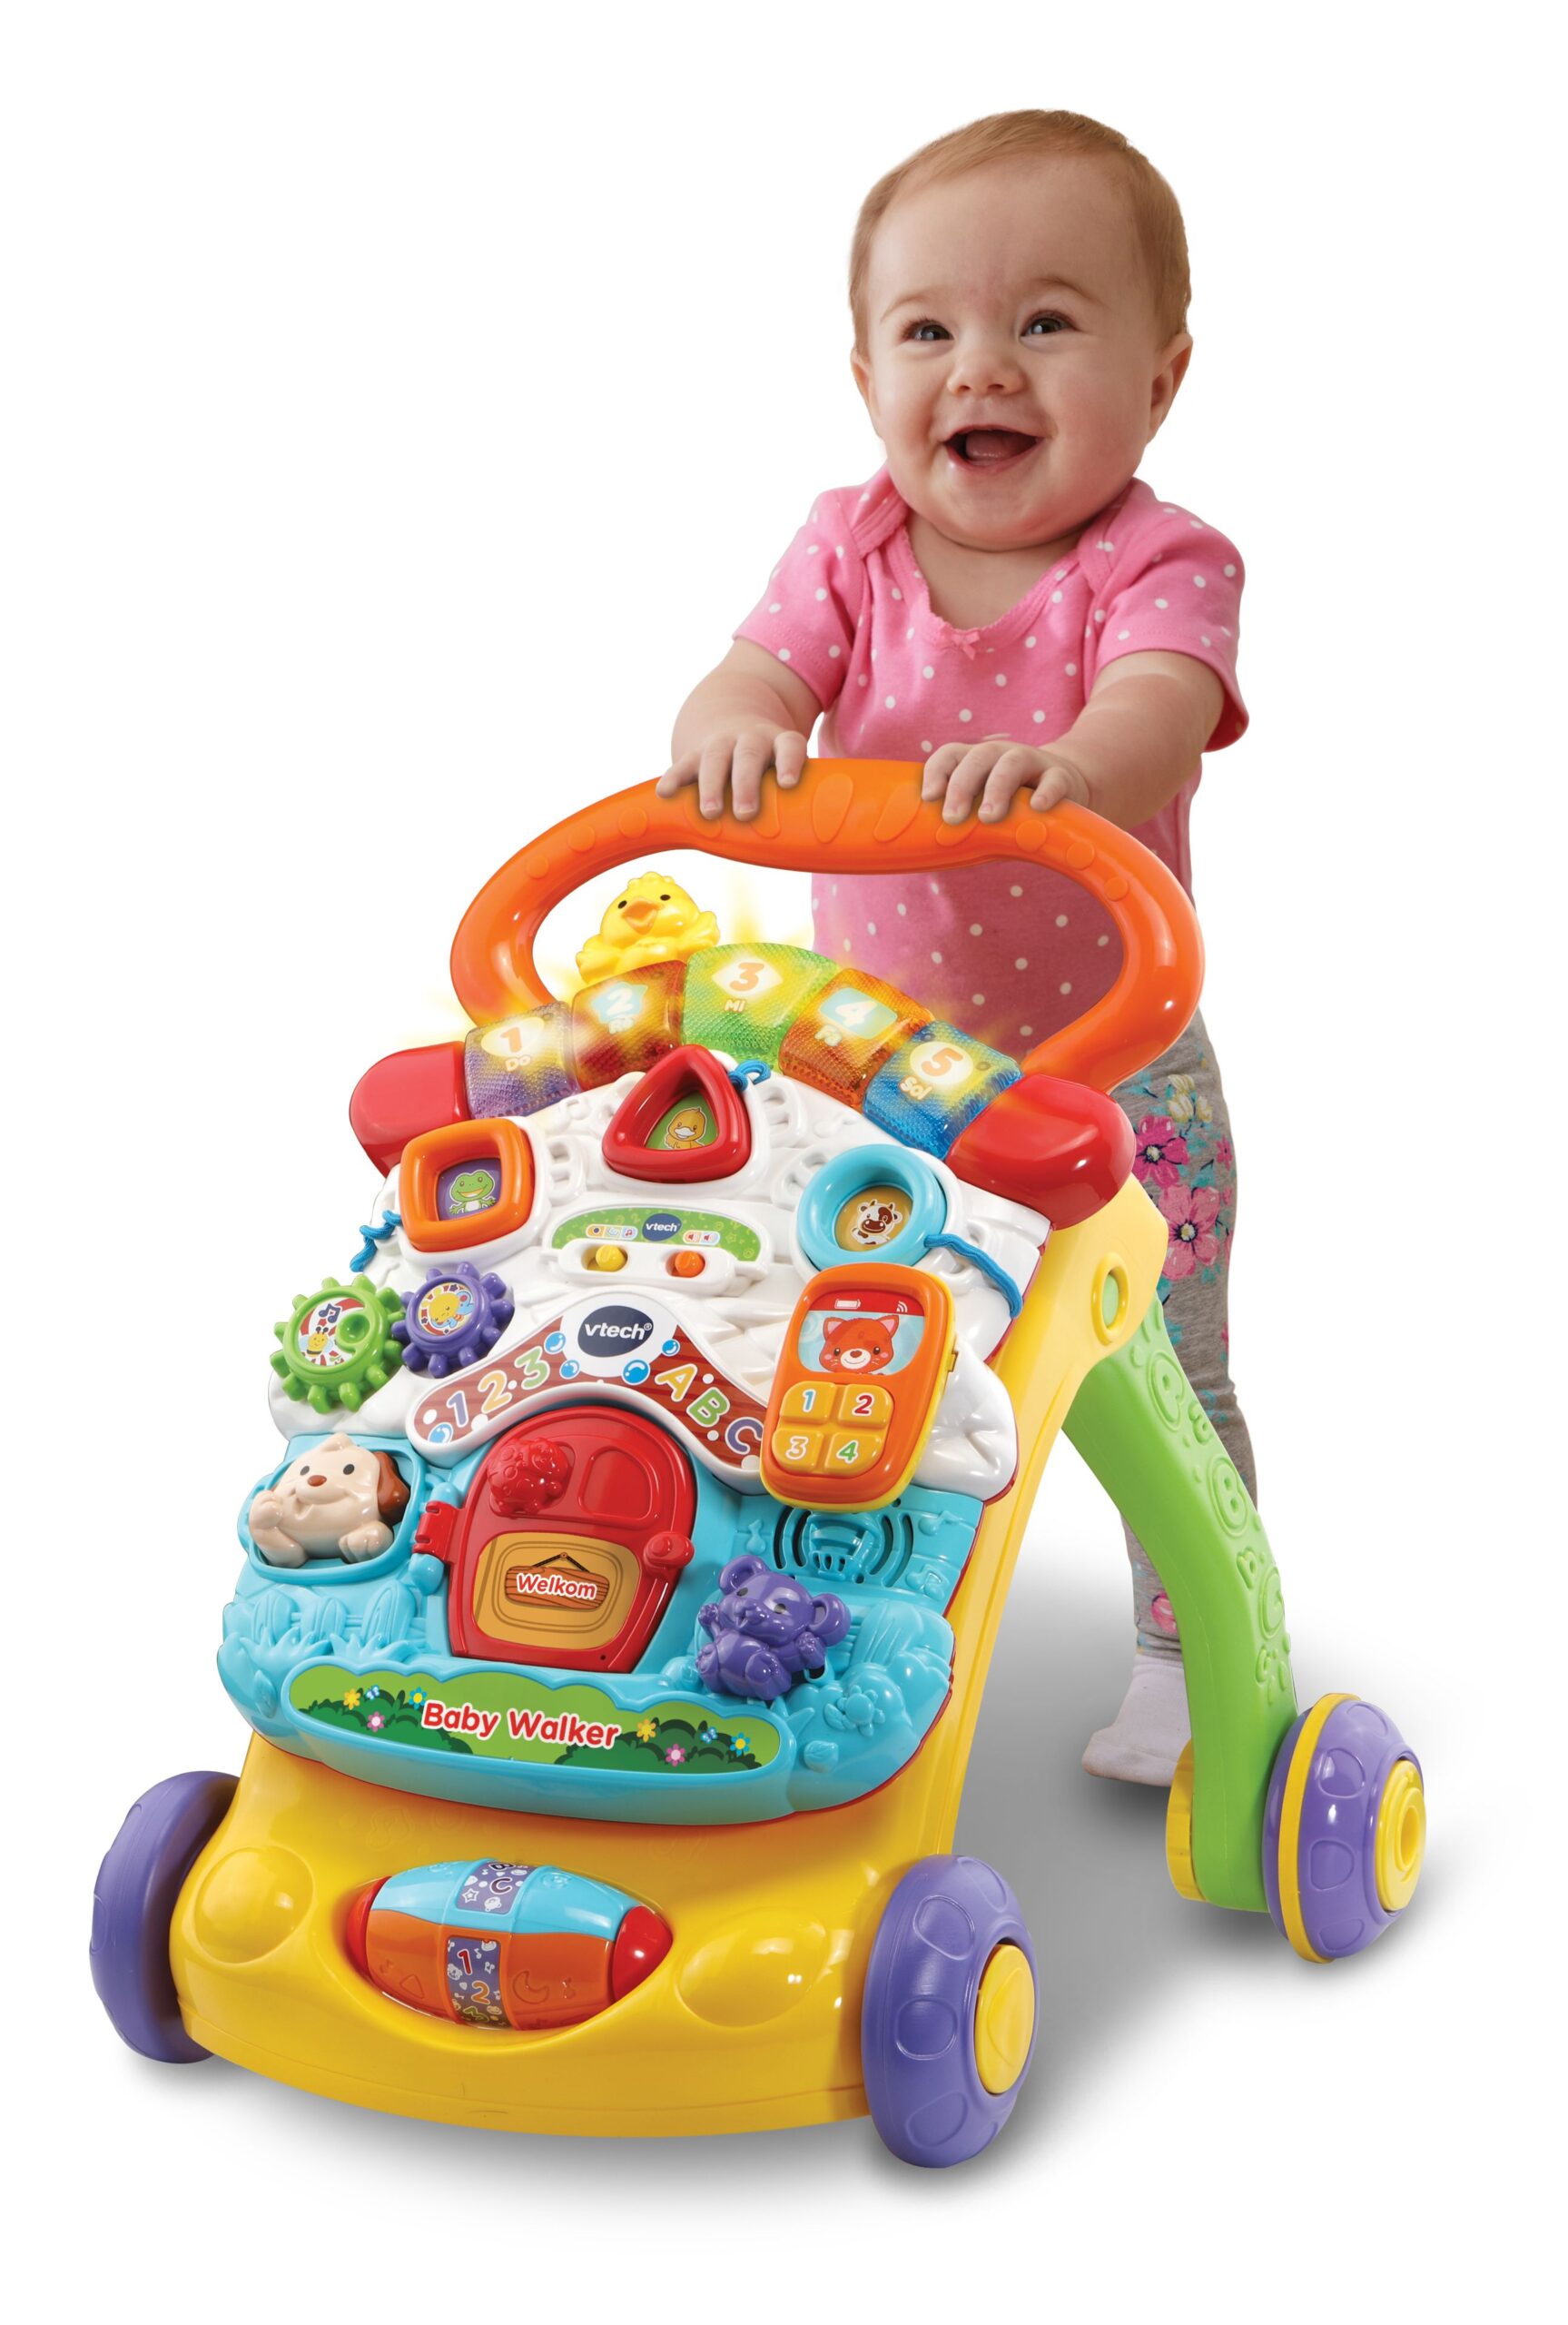 Kosten ONWAAR capsule Sponsored - Hoe kies ik geschikt speelgoed voor mijn baby?